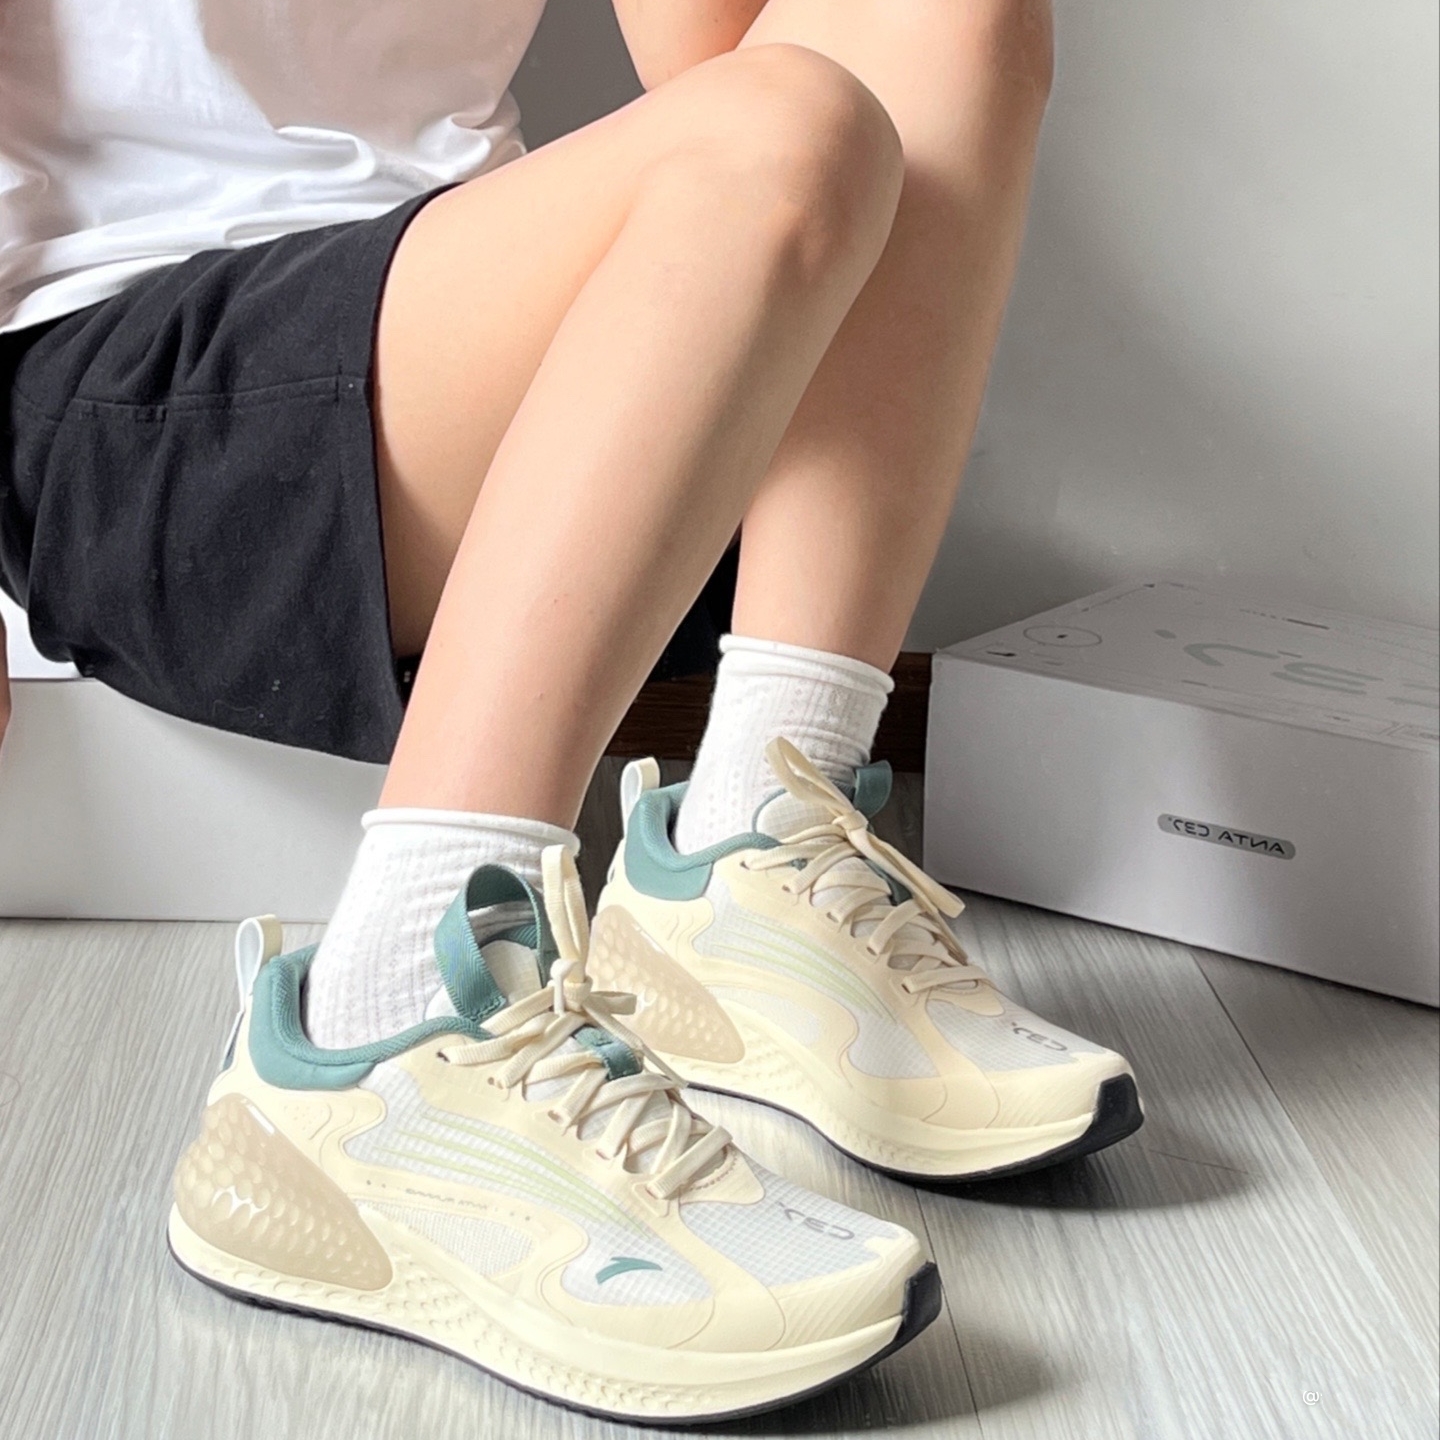 安踏跑步鞋正品C37+夏季透气低帮百搭女款防滑减震耐磨运动休闲鞋